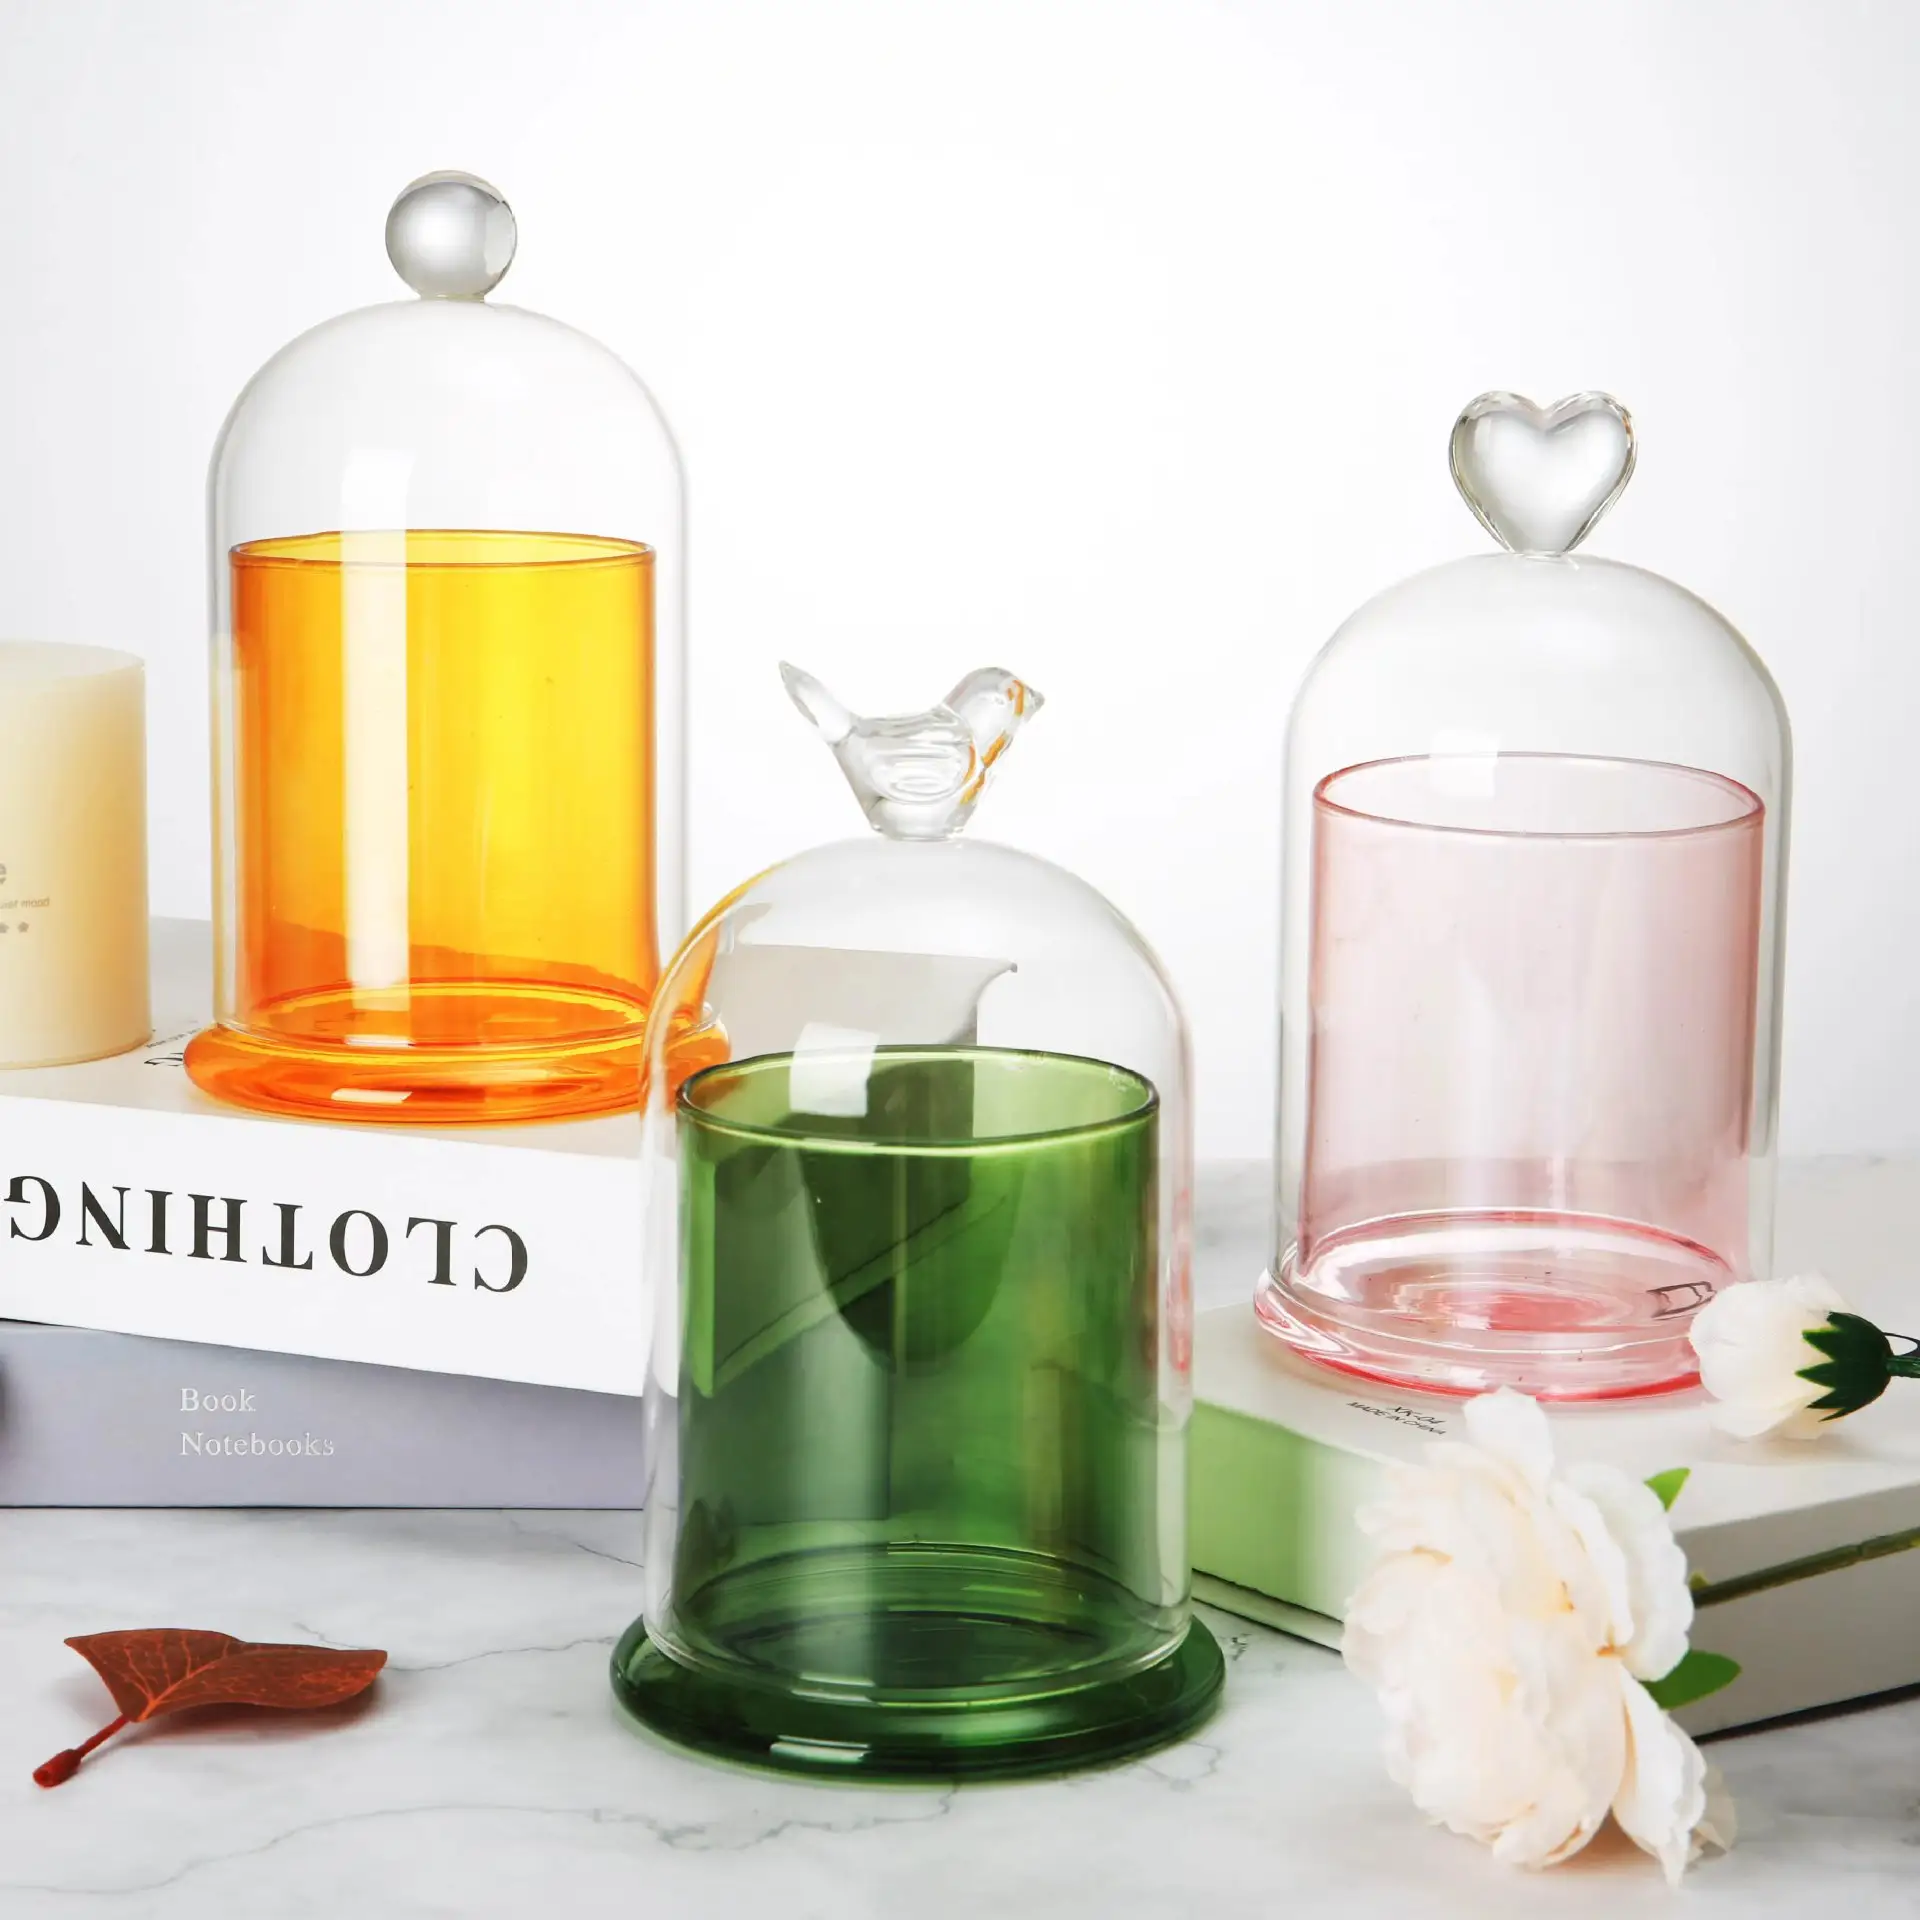 Venta al por mayor de cubiertas de cristal de aromaterapia aceite esencial de vidrio vela taza incienso piedra gafas portavelas cubierta